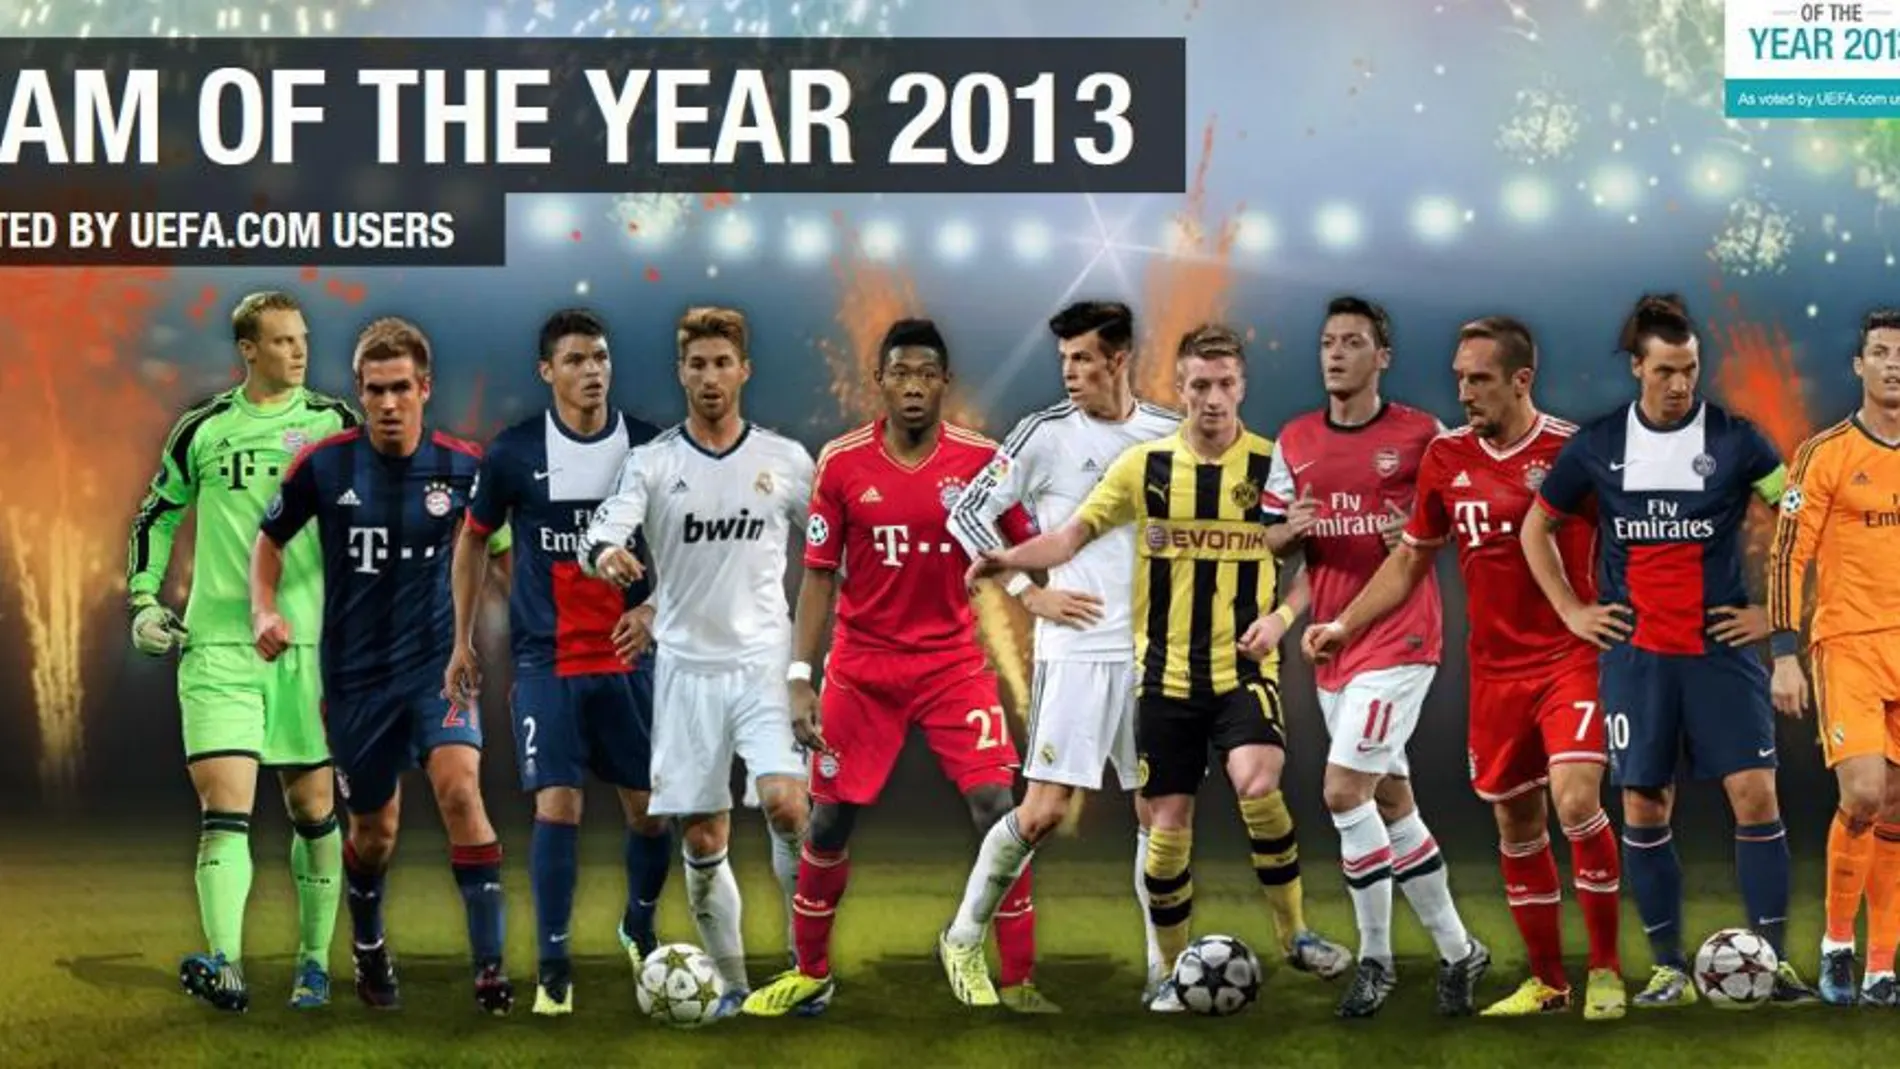 Imagen del «Equipo del Año 2013» uefa.com, que acaba de hacer público el organismo futbolístico